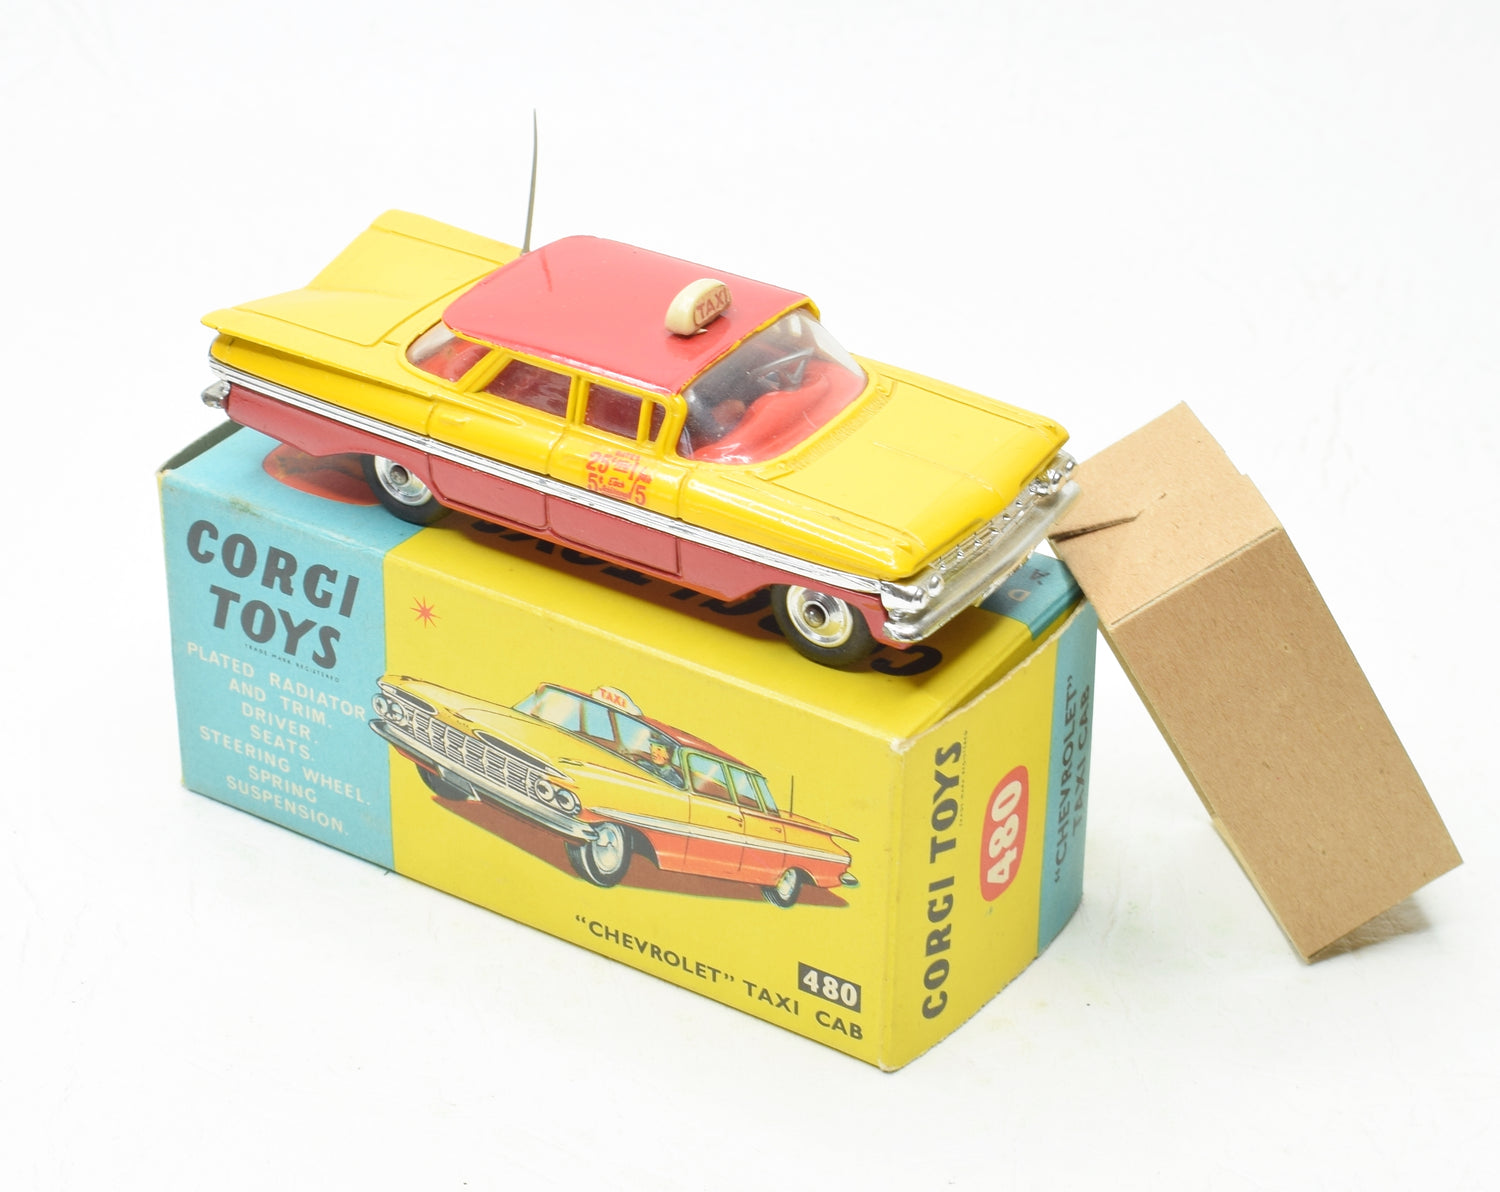 Corgi Toys 480 Chevrolet Taxi Cab Virtually Mint/Boxed 'Valencia' Collection